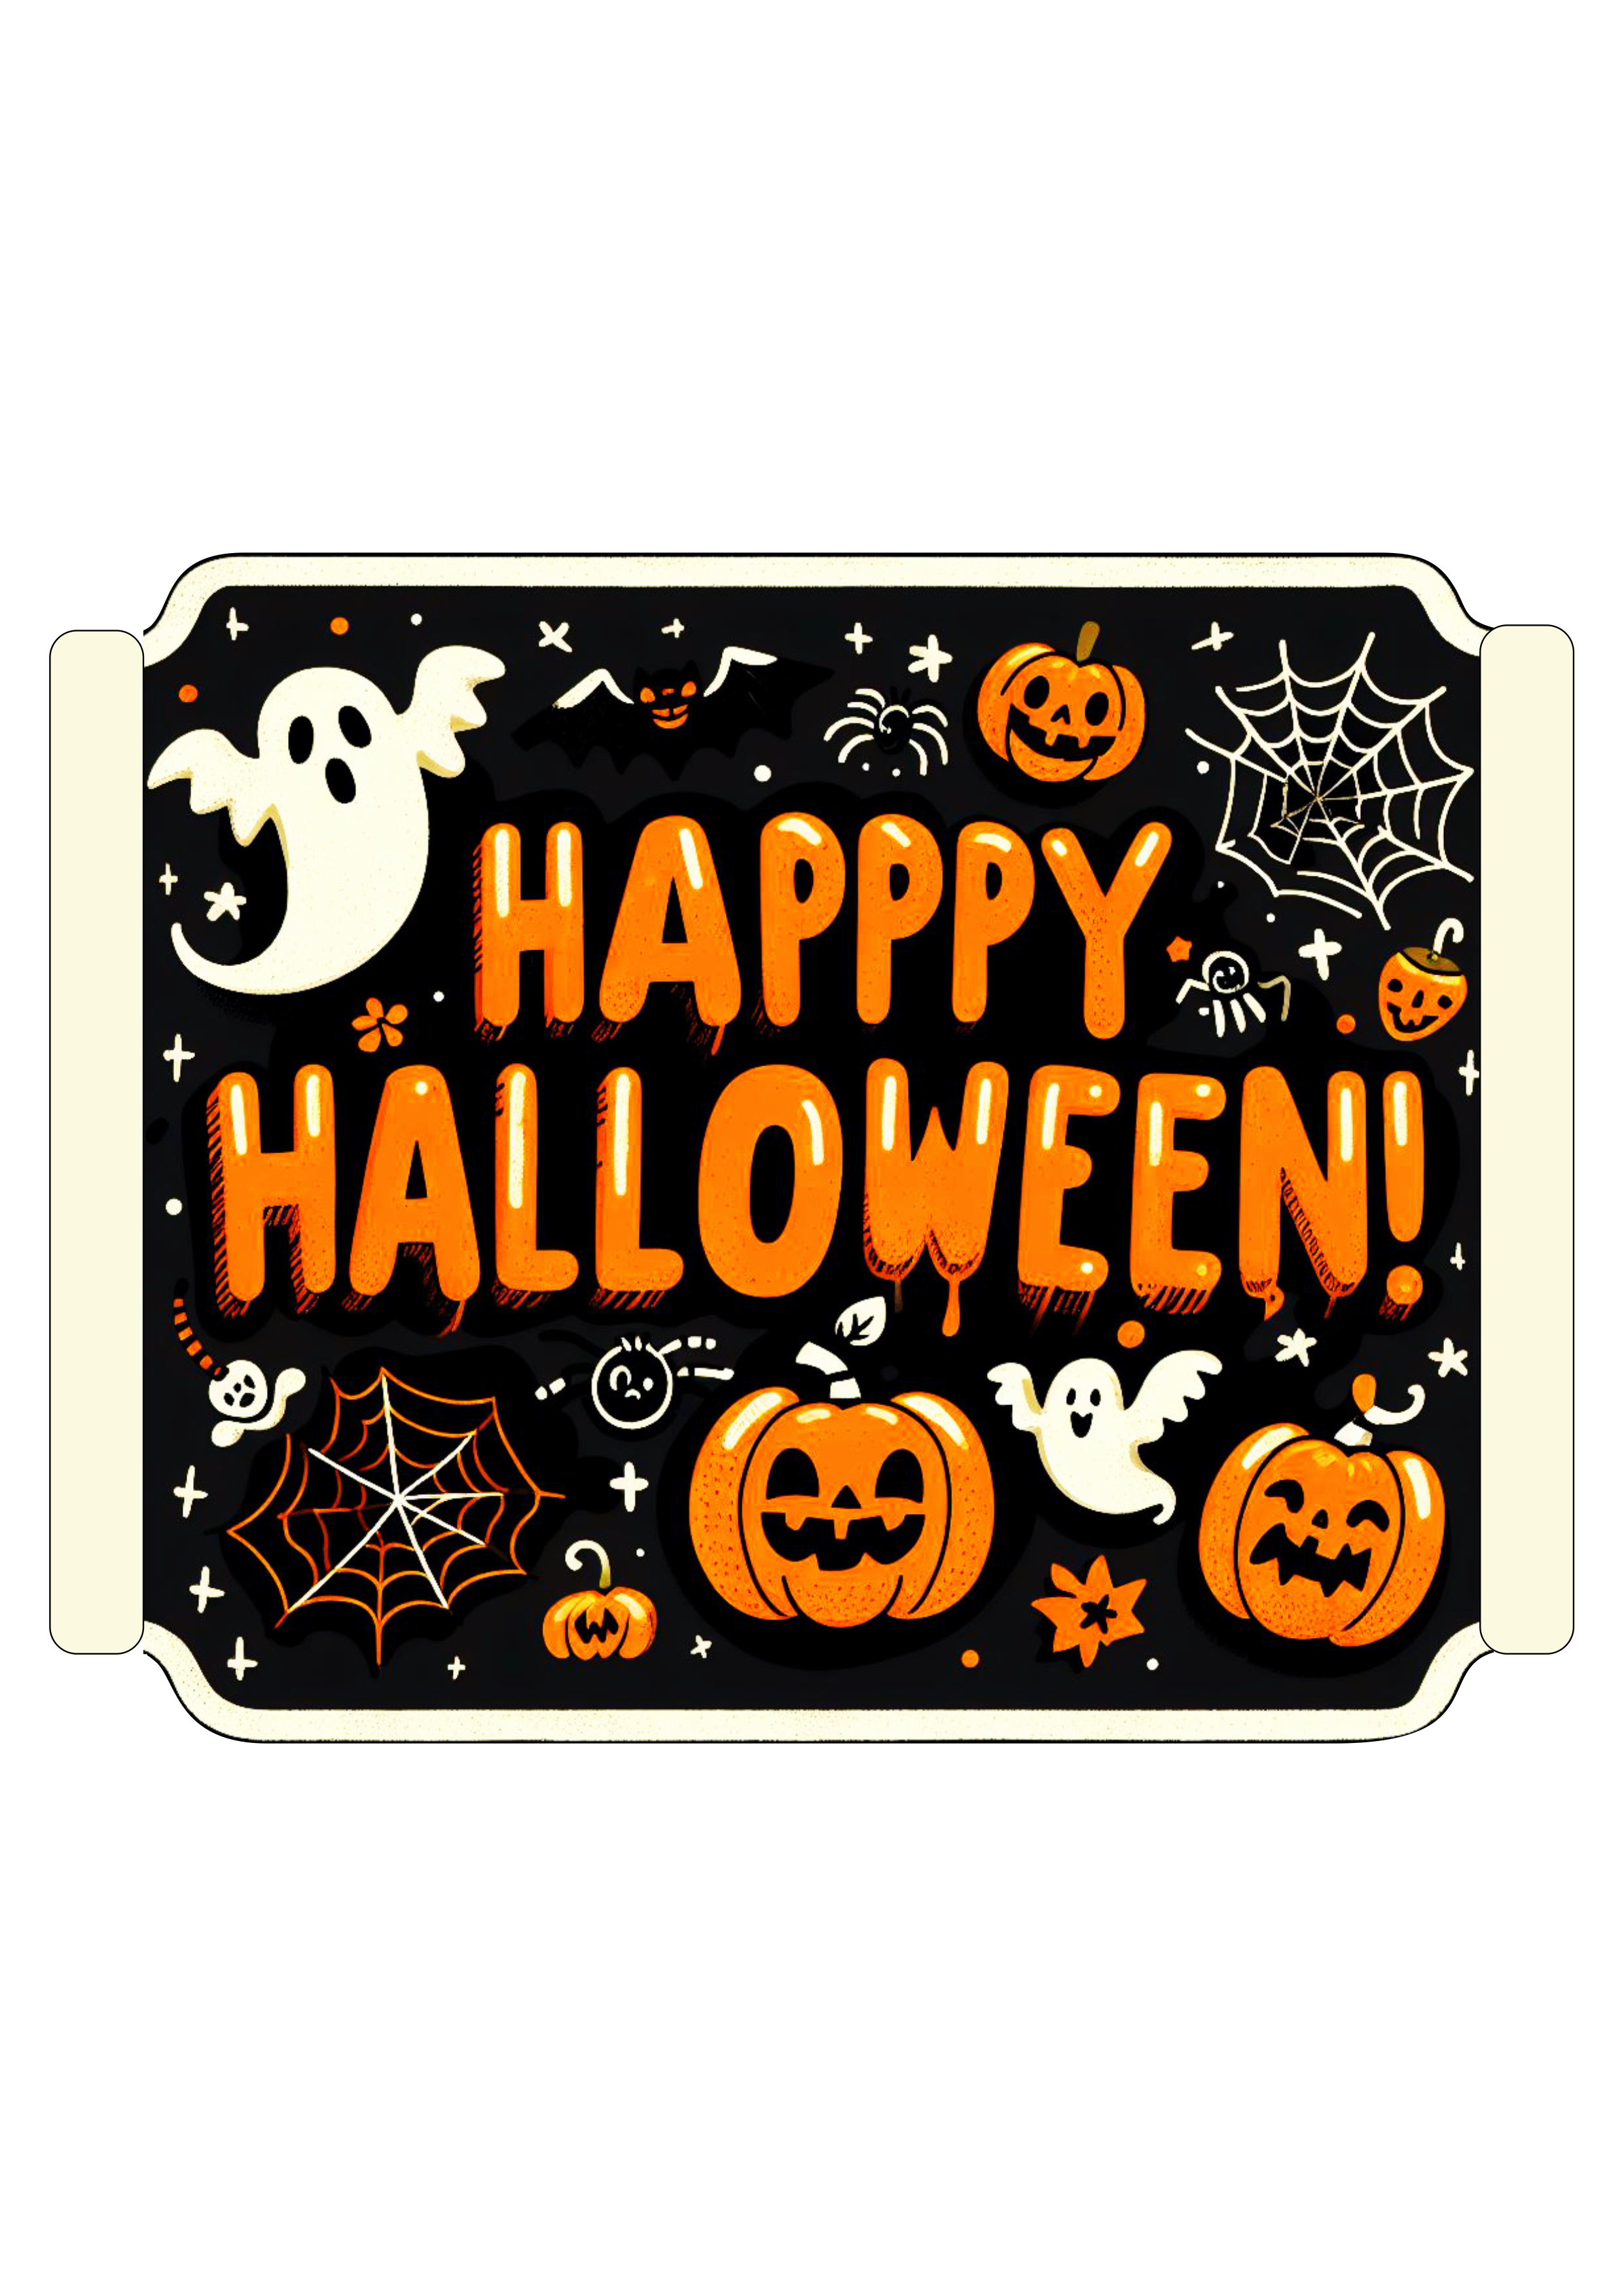 Happy Halloween gostosuras ou travessuras desenho simples morcego abóbora fantasma aranha png